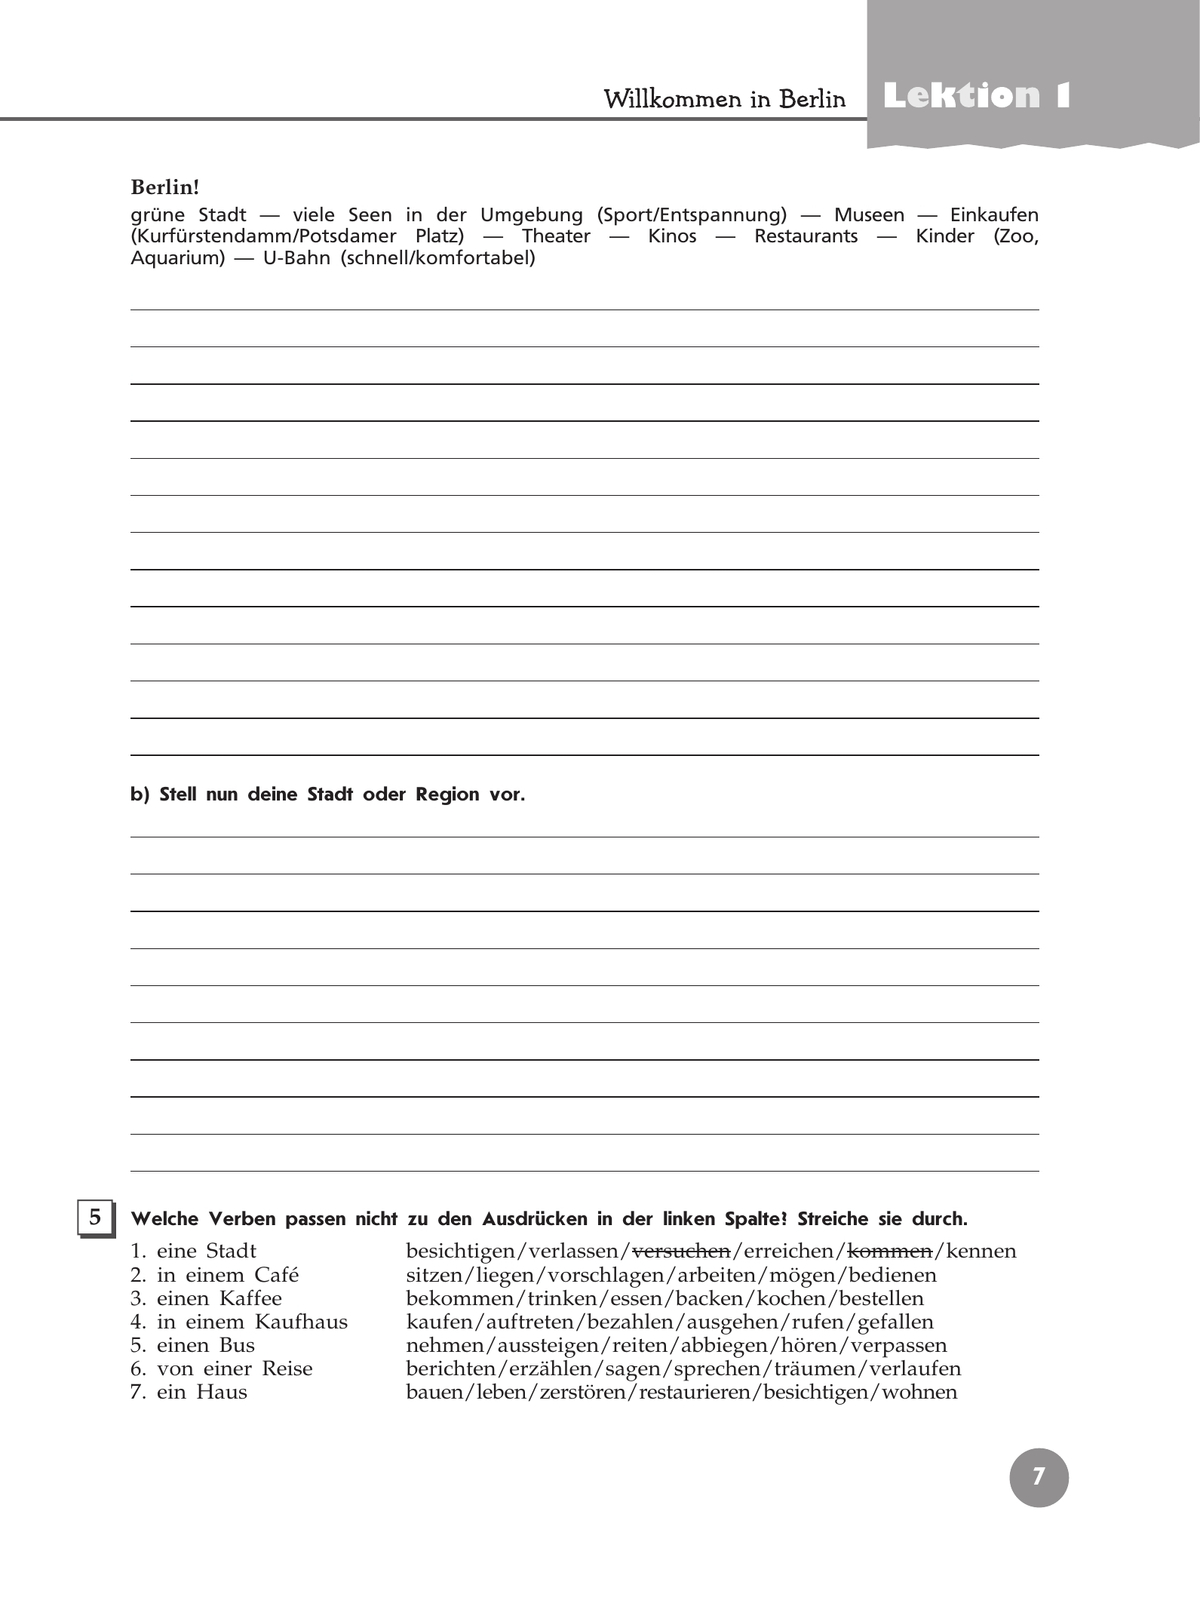 Немецкий язык. Рабочая тетрадь. 9 класс 7